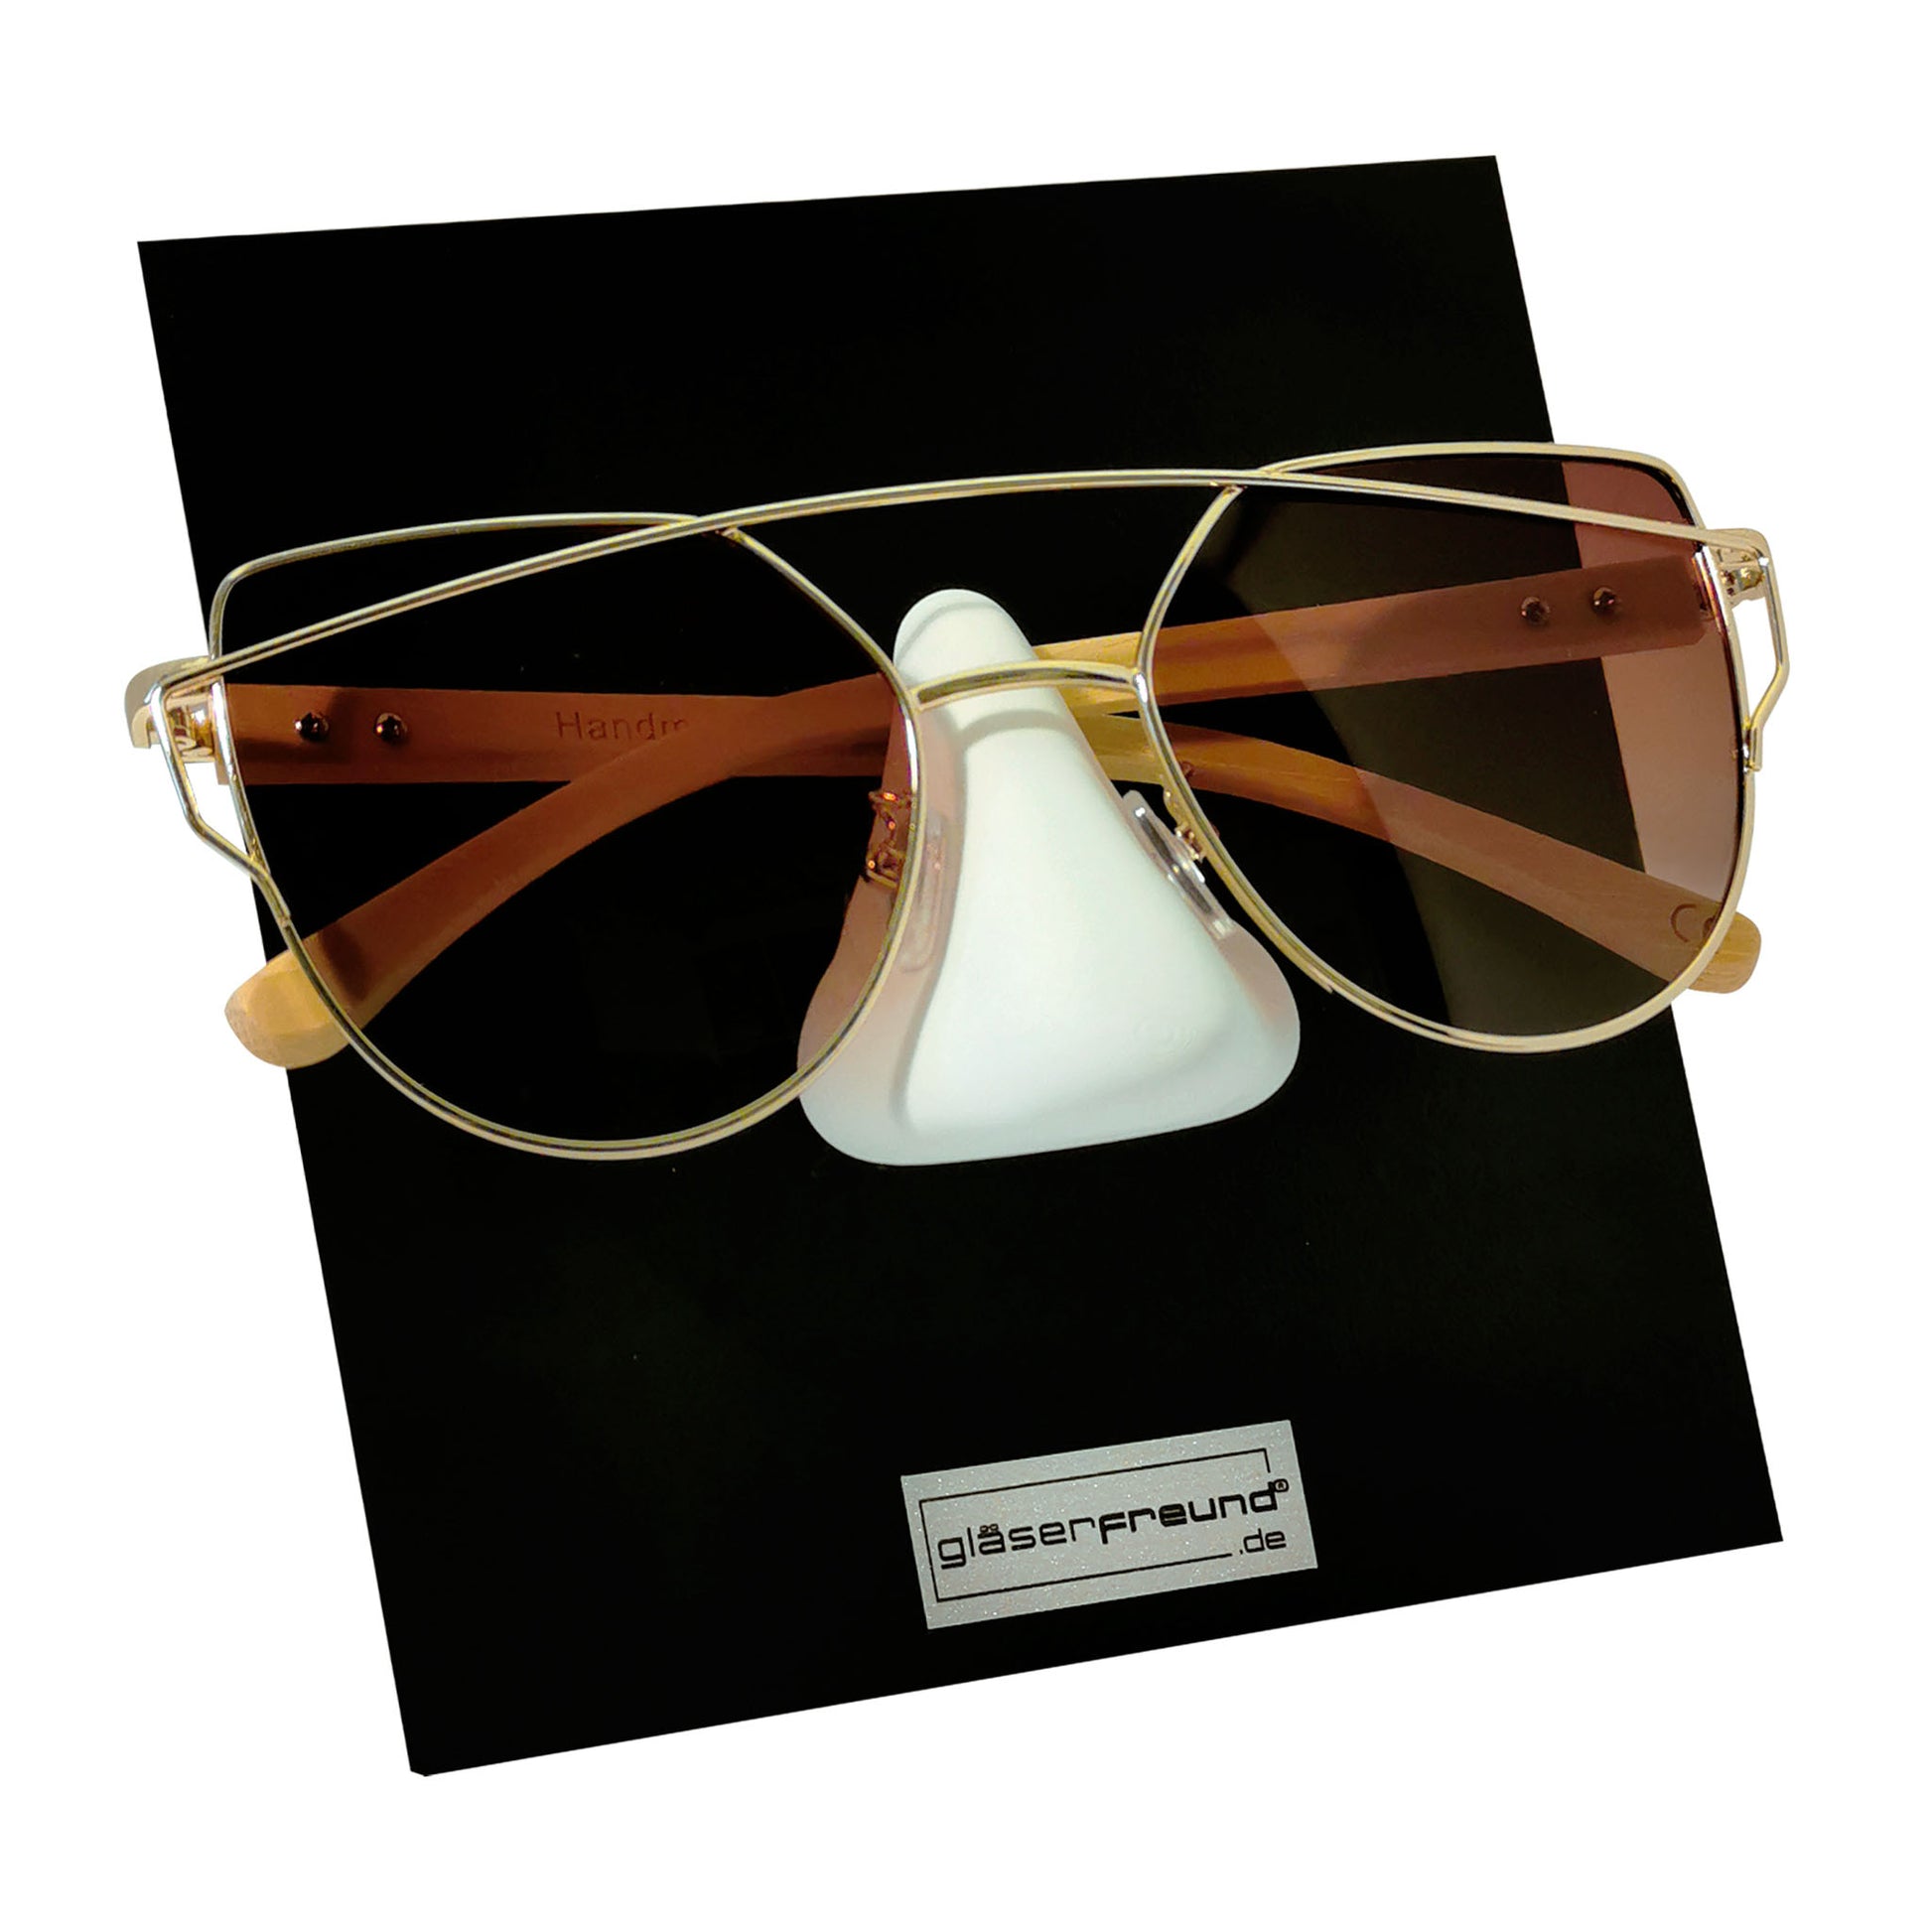 Frame black Brillenorganizer aus Holz eine – gläserfreund® Brille für